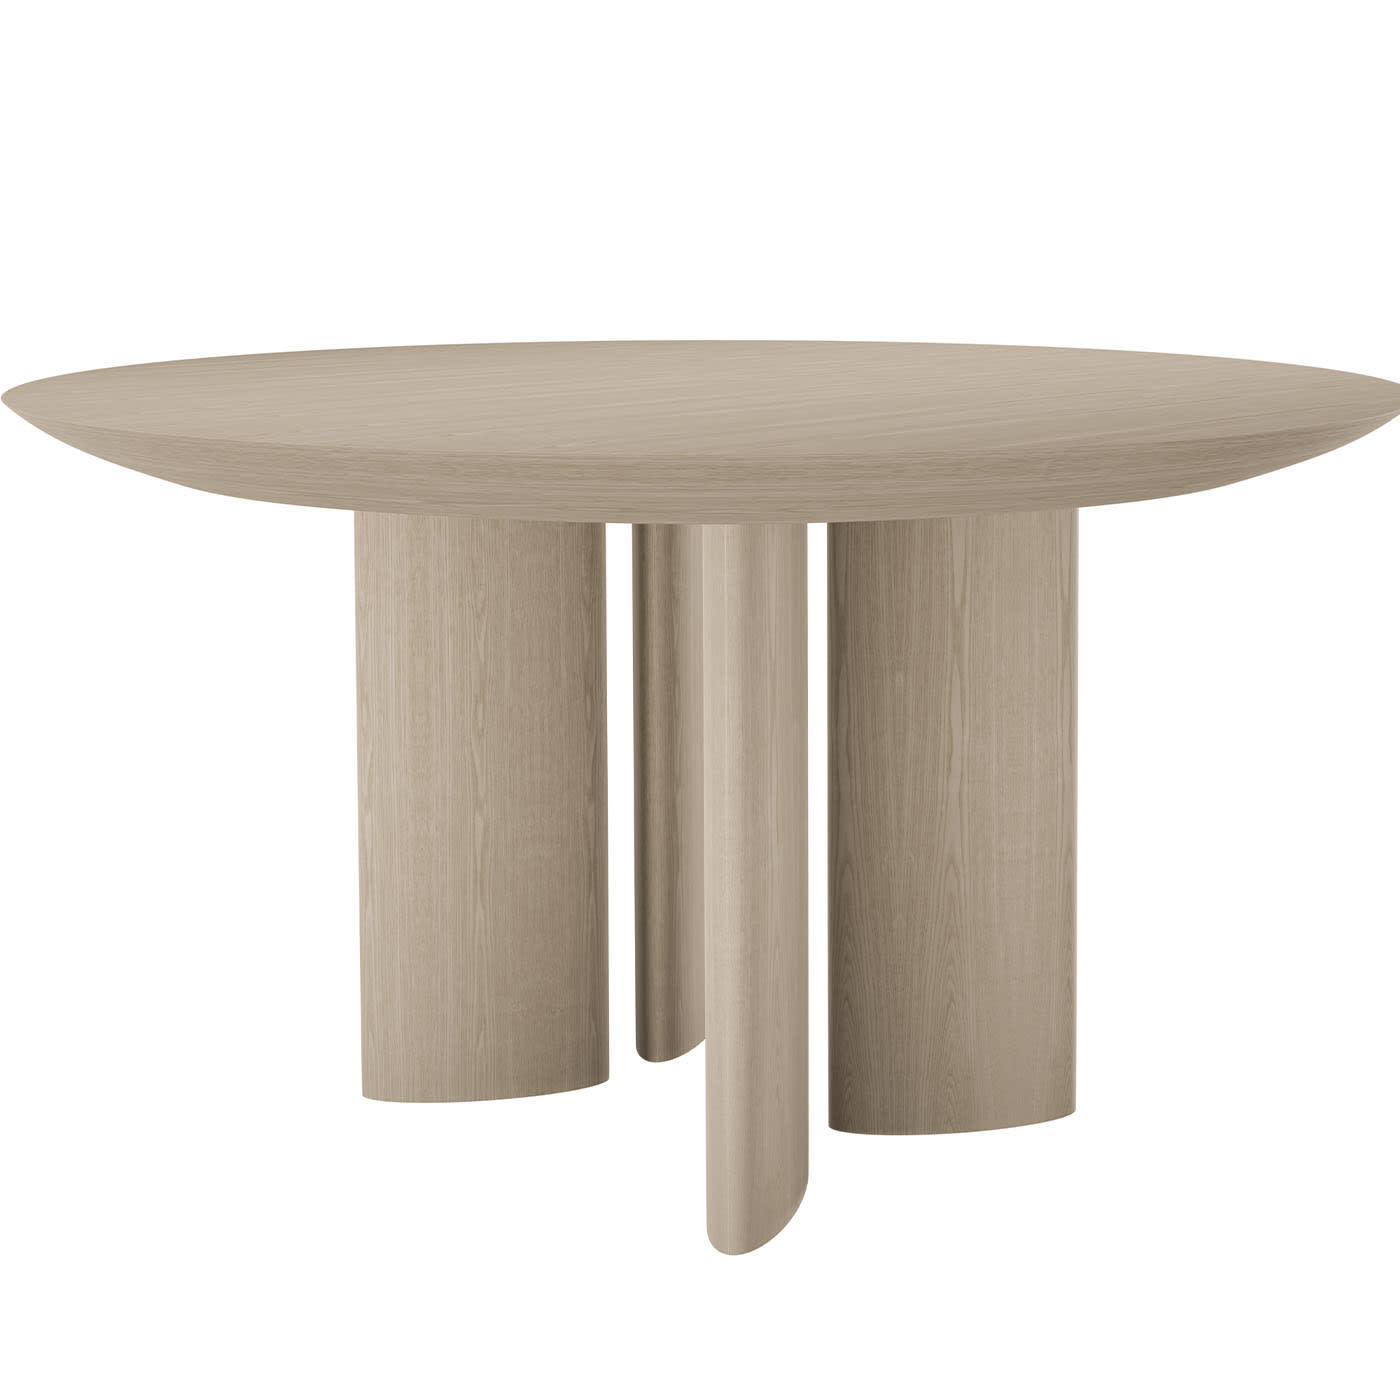 Mesa extensible con tapa redonda de cerámica Made in Italy